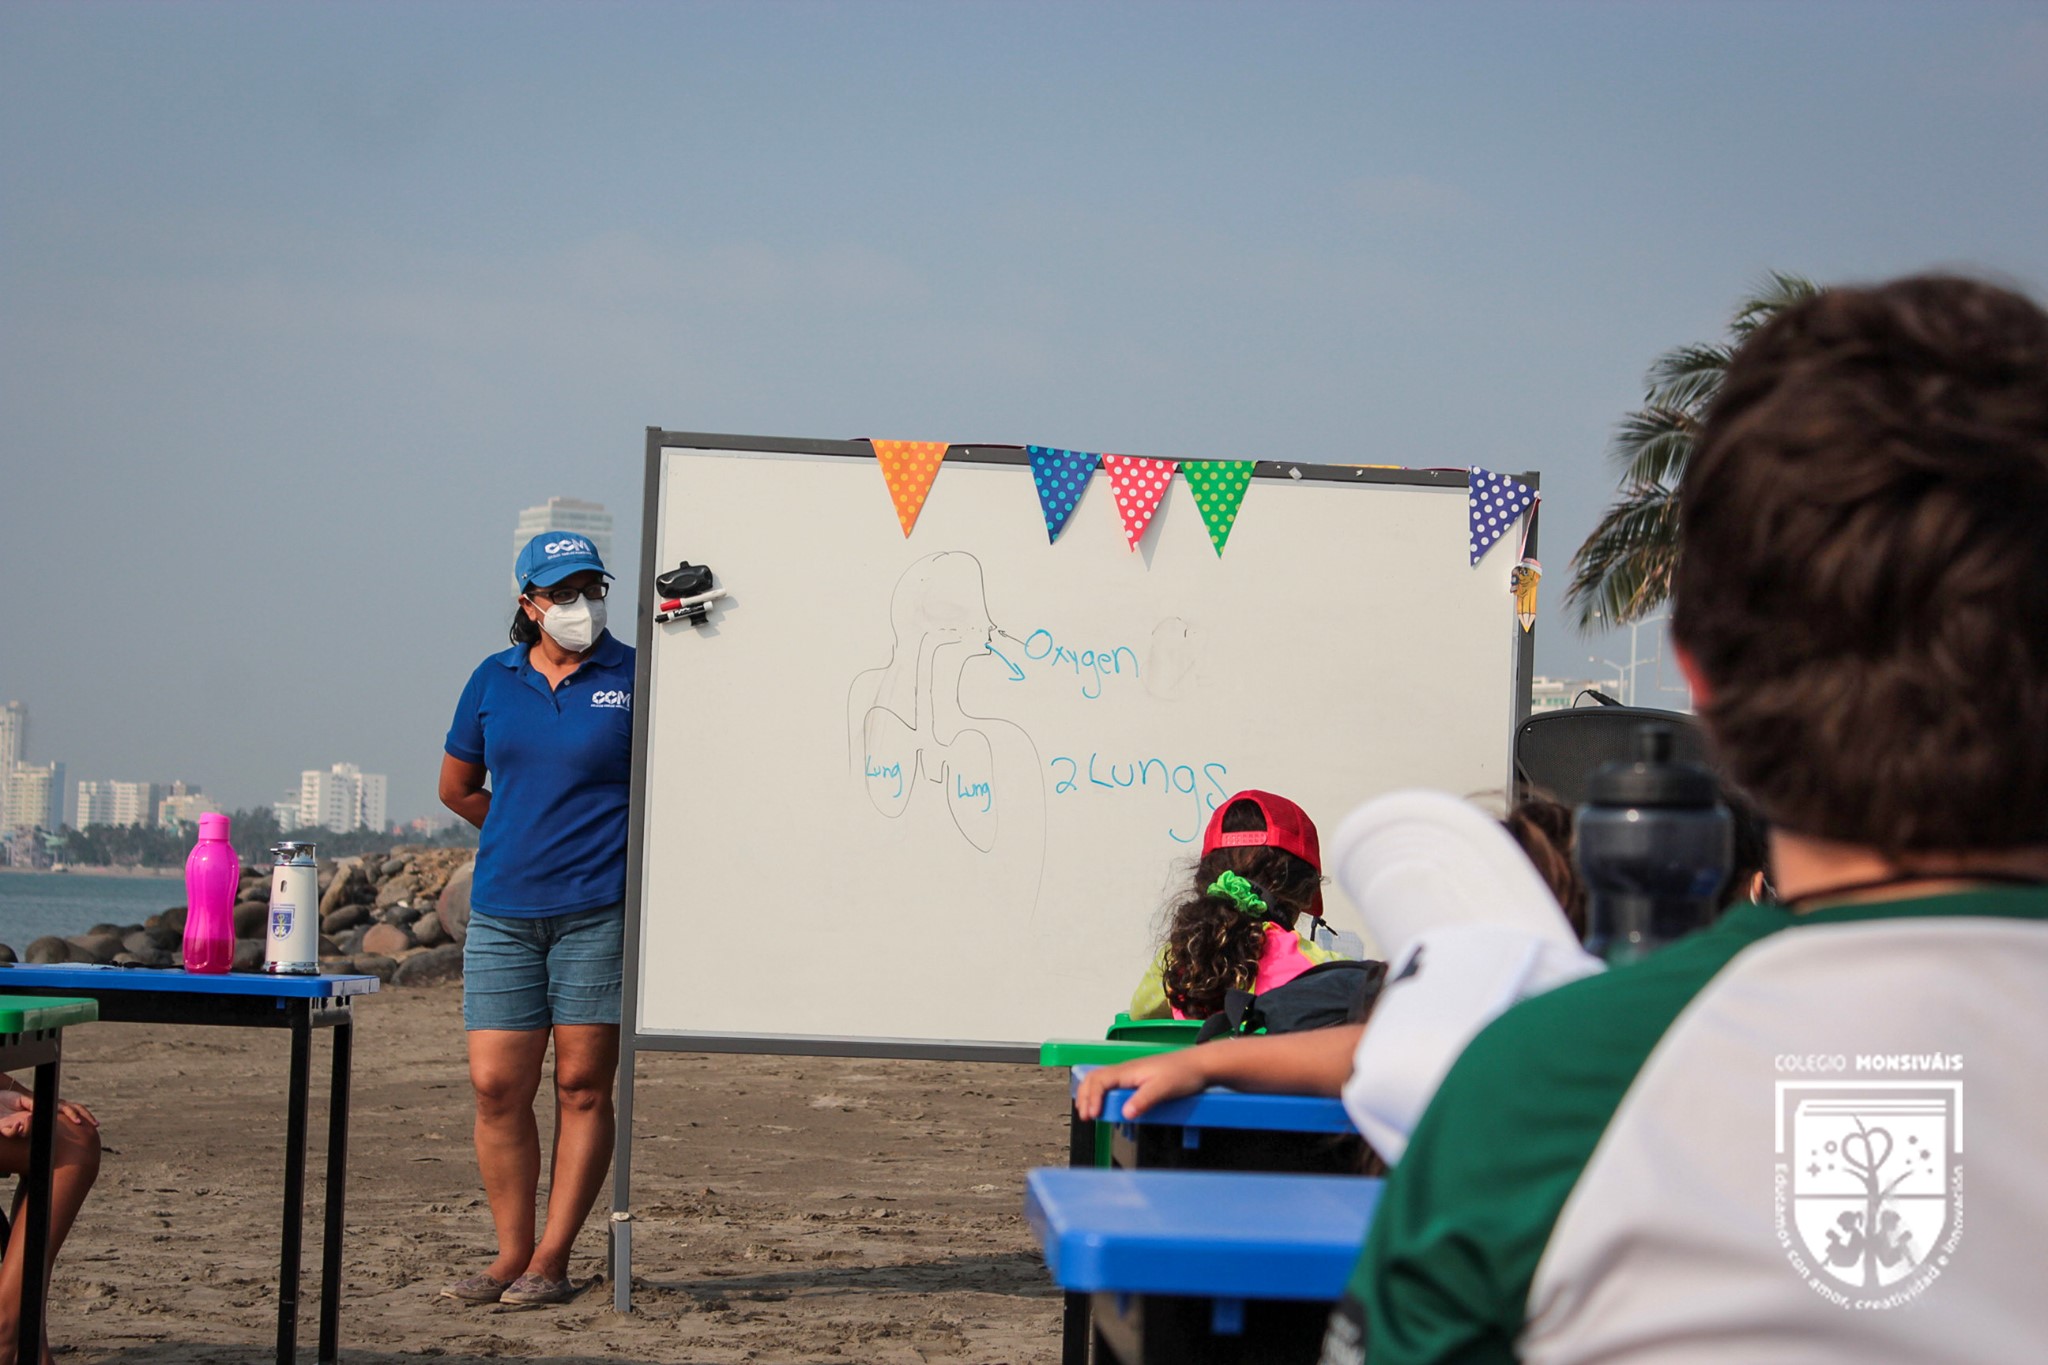 Escuela en Veracruz empieza clases